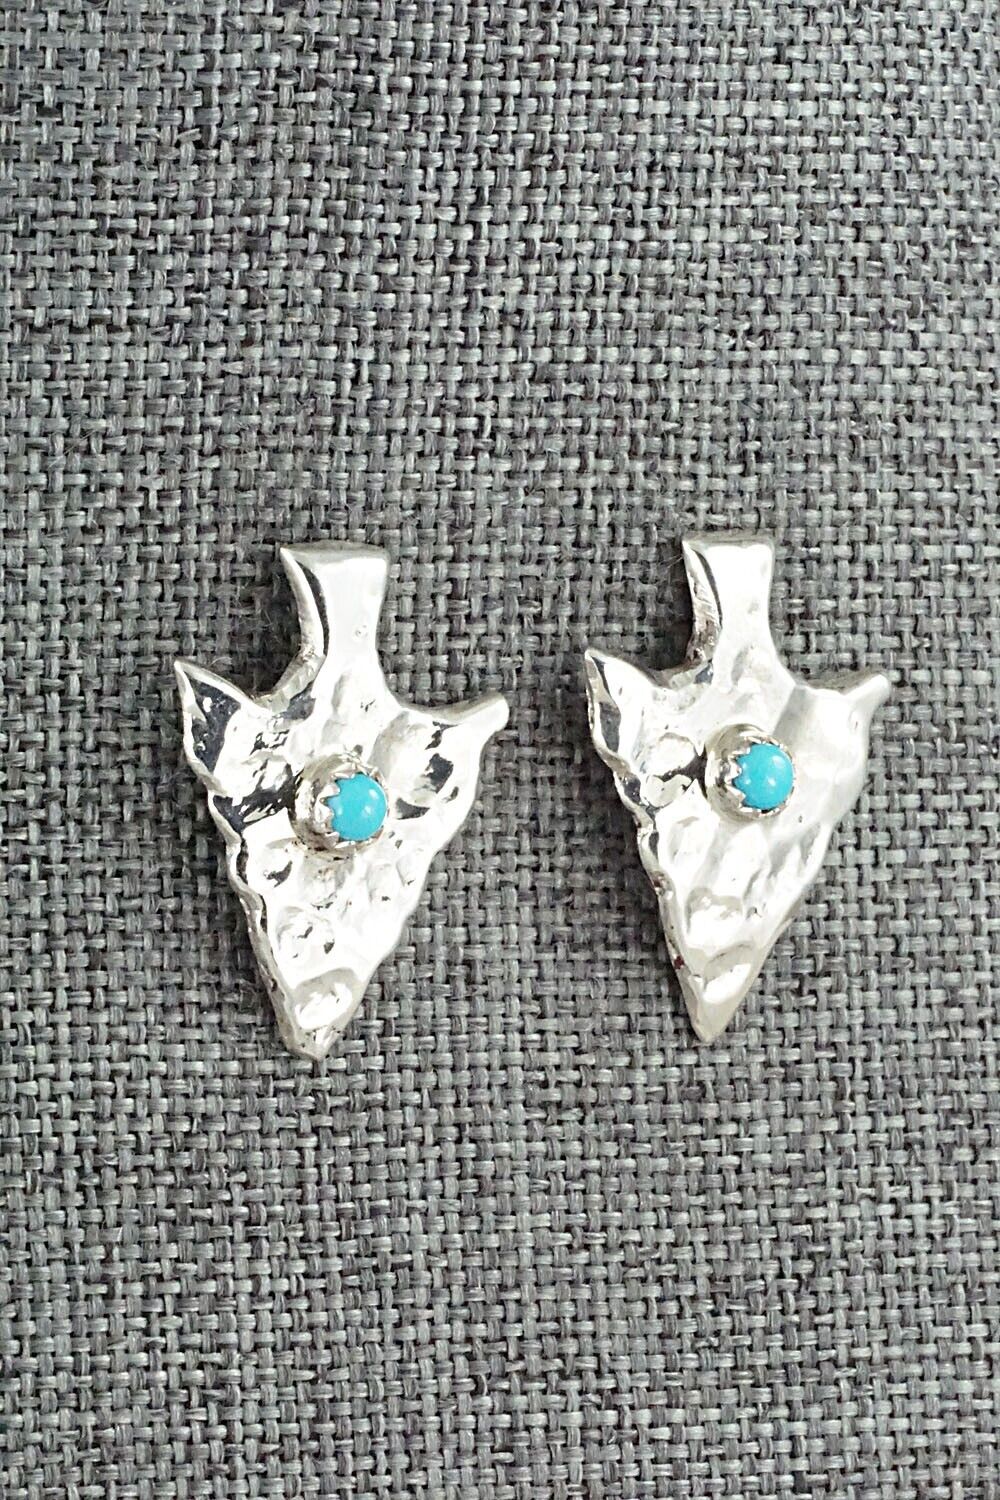 Turquoise & Sterling Silver Earrings - Mildred Parkhurst